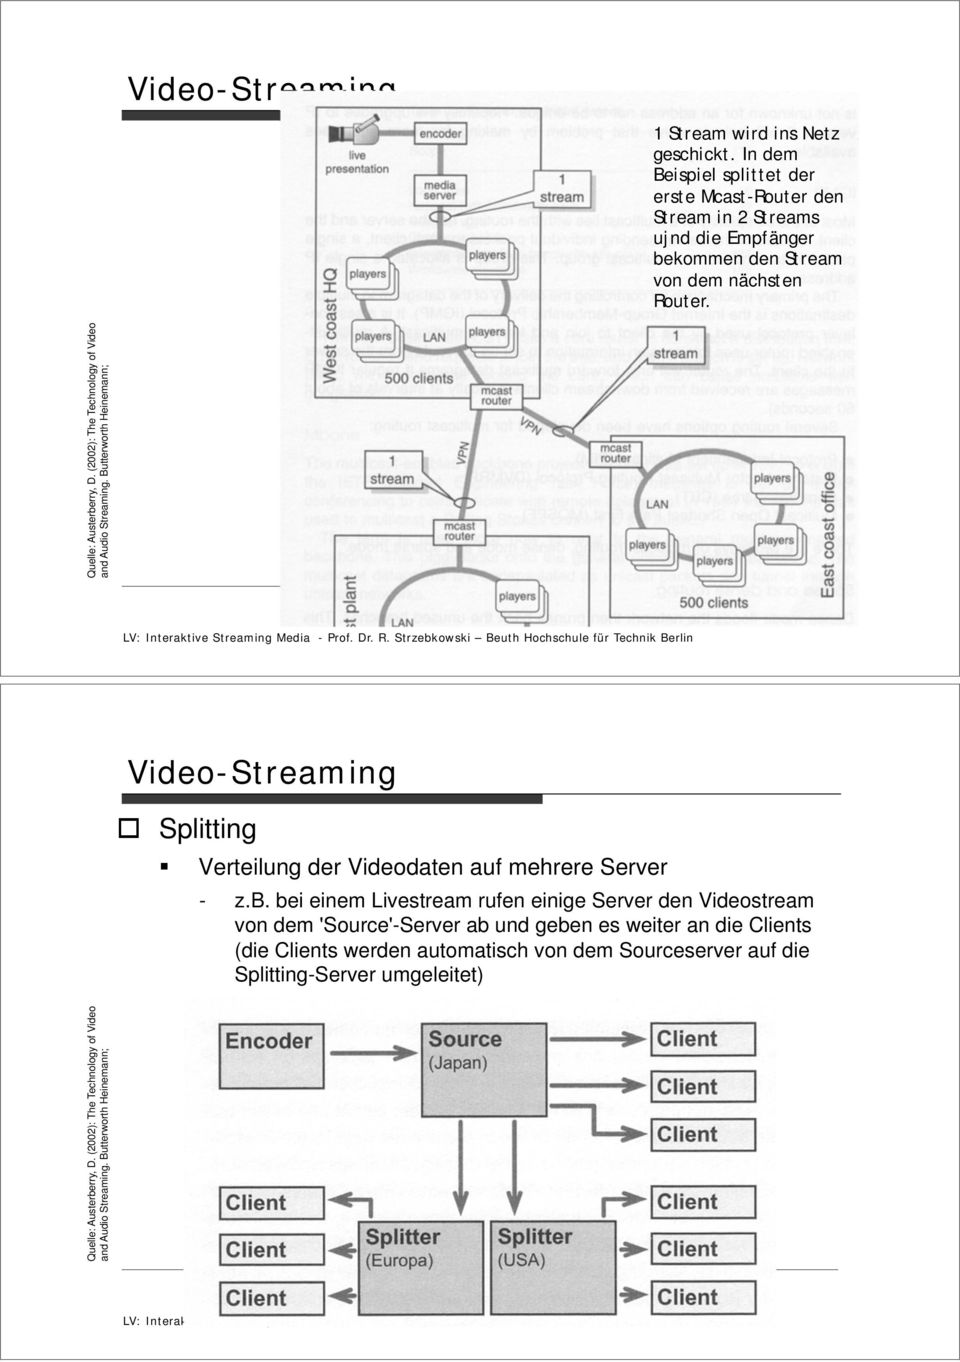 Stream von dem nächsten Router. Splitting Verteilung der Videodaten auf mehrere Server - z.b.